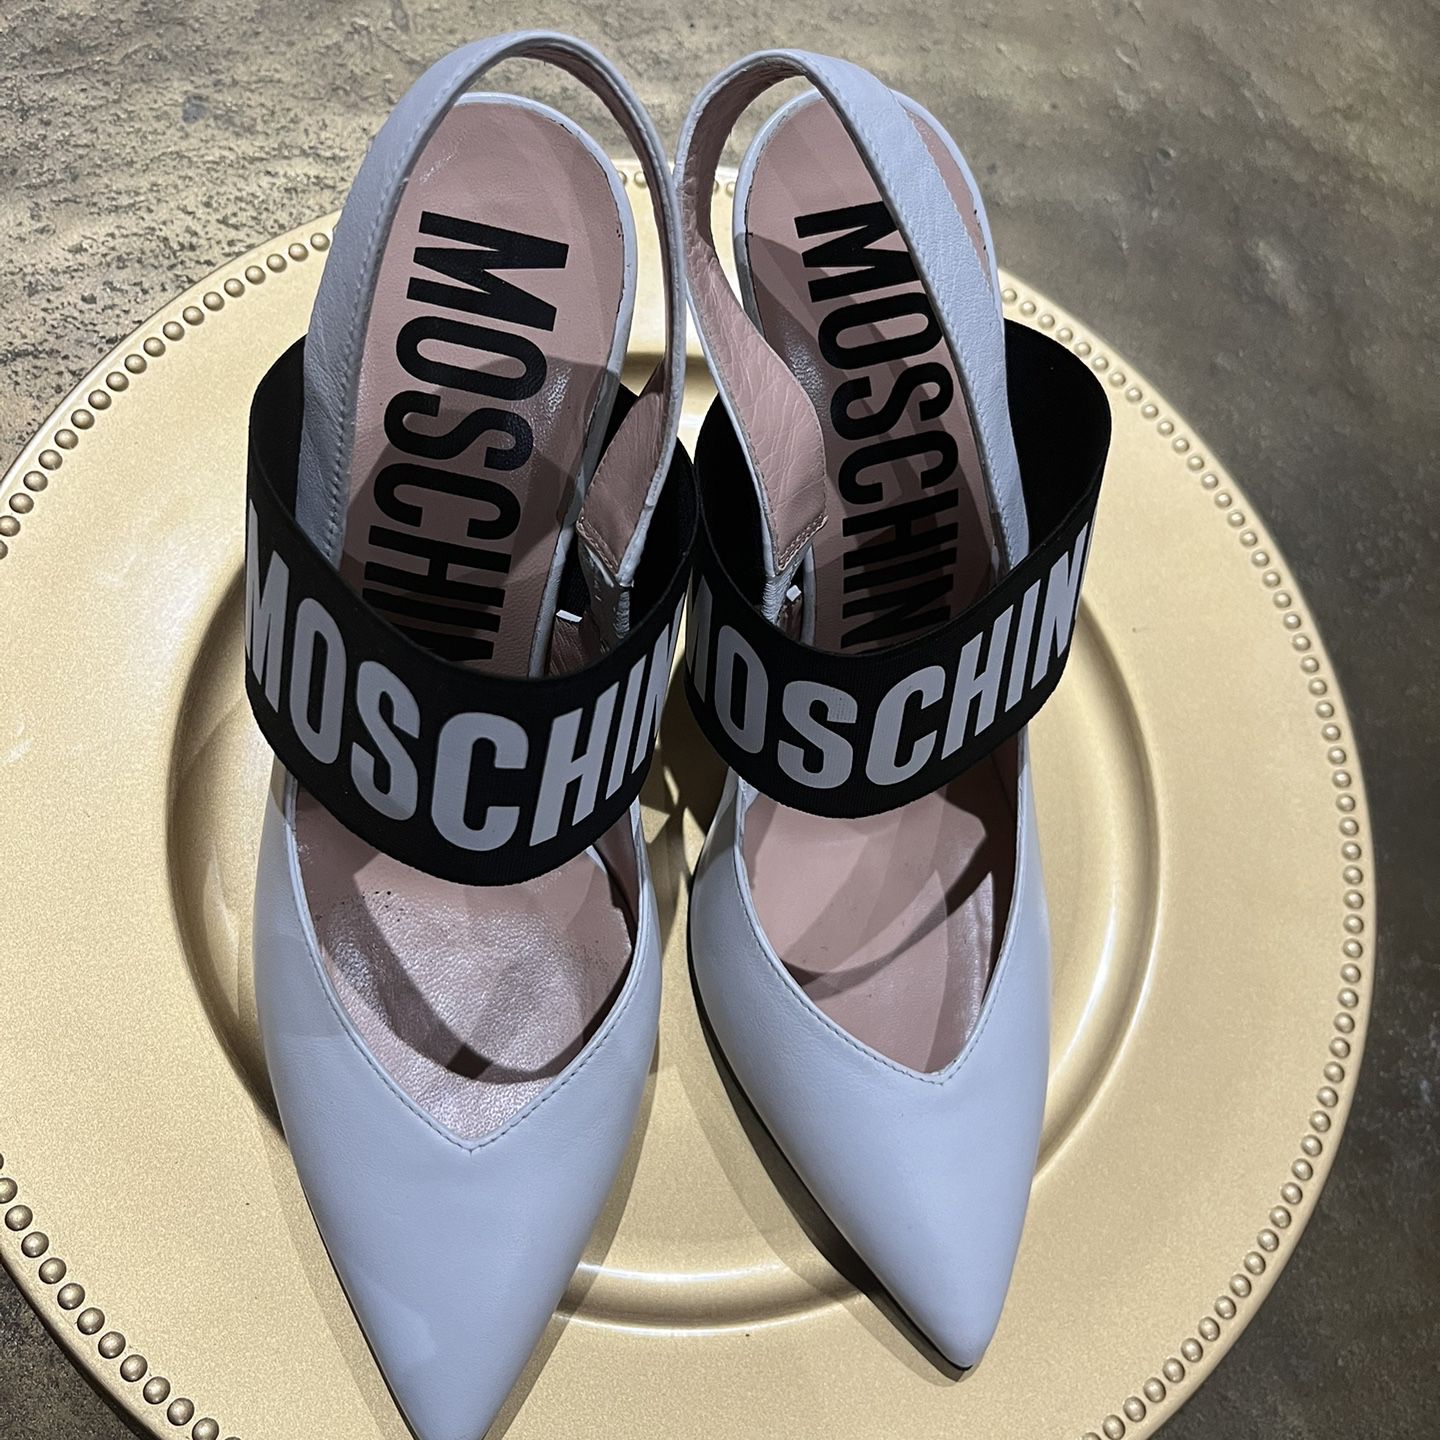 White Moschino Heels Size 38 Women’s